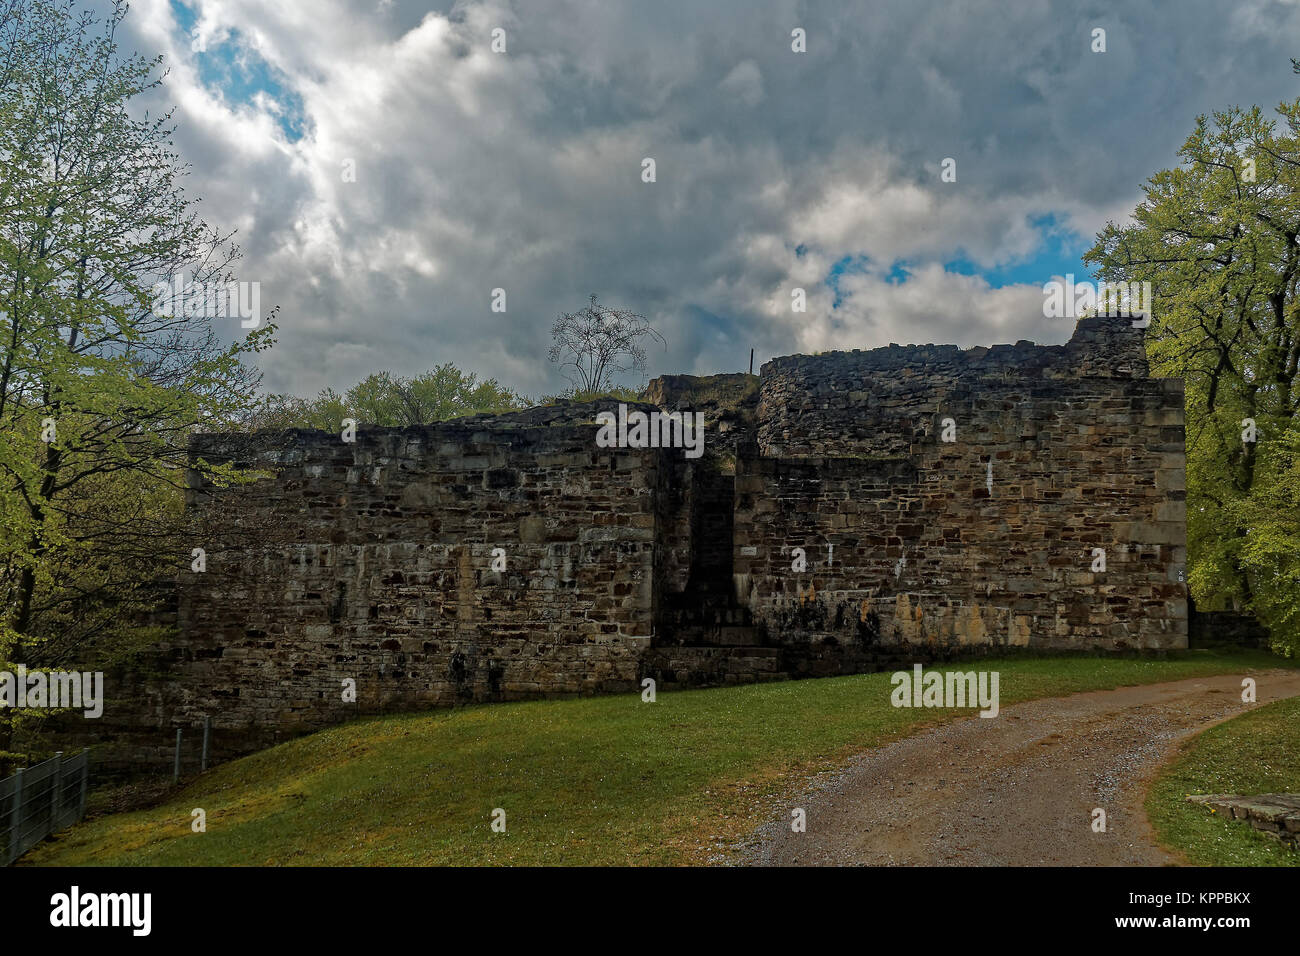 Le rovine di un castello tenere, ingresso Foto Stock